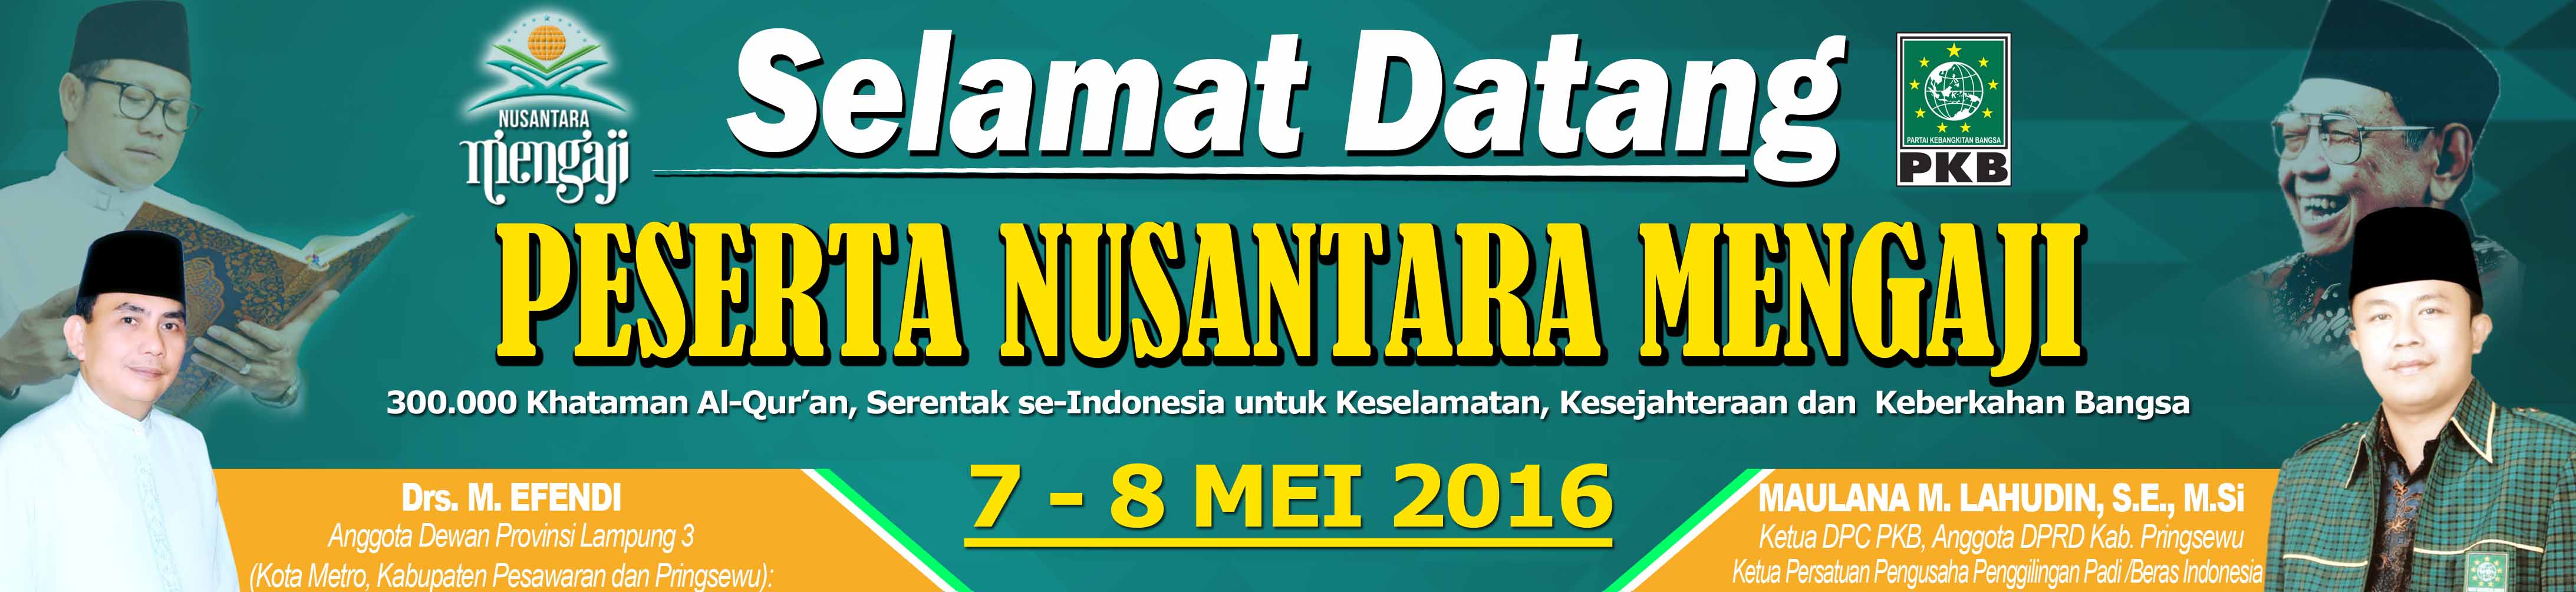 Cetak Banner Selamat Datang Peserta PKB lampung Nusantara 